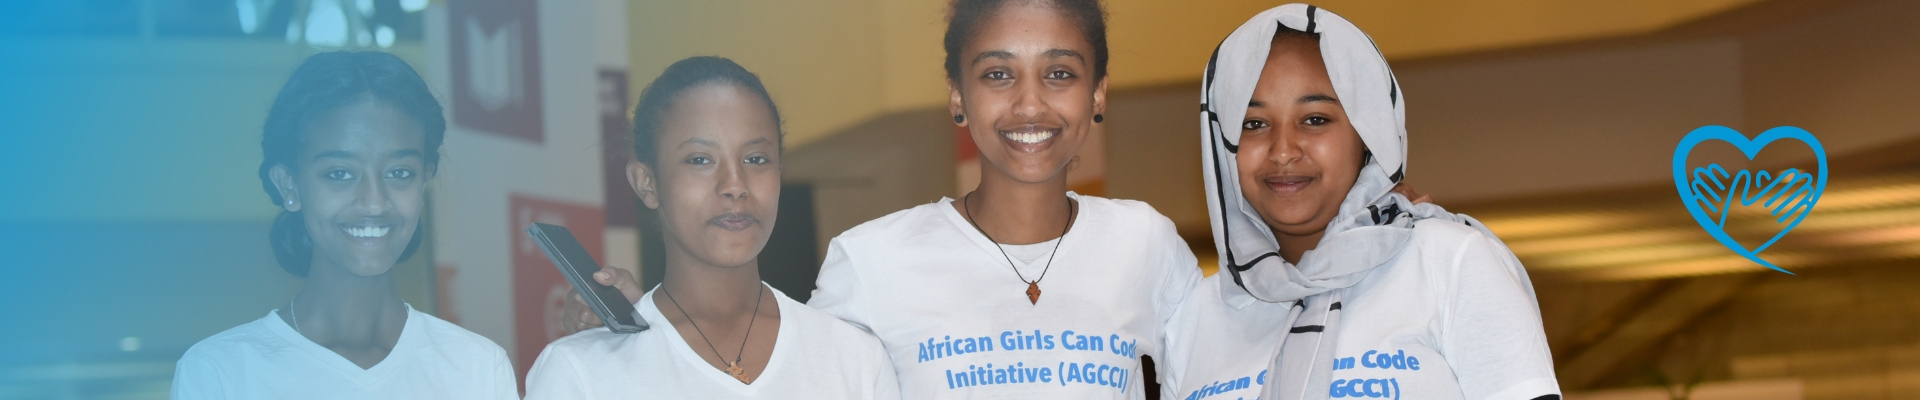 Spenden Sie für UN Women Deutschland. Vier Teilnehmerinnen der African Girls Can Code Initiative lächeln in die Kamera.